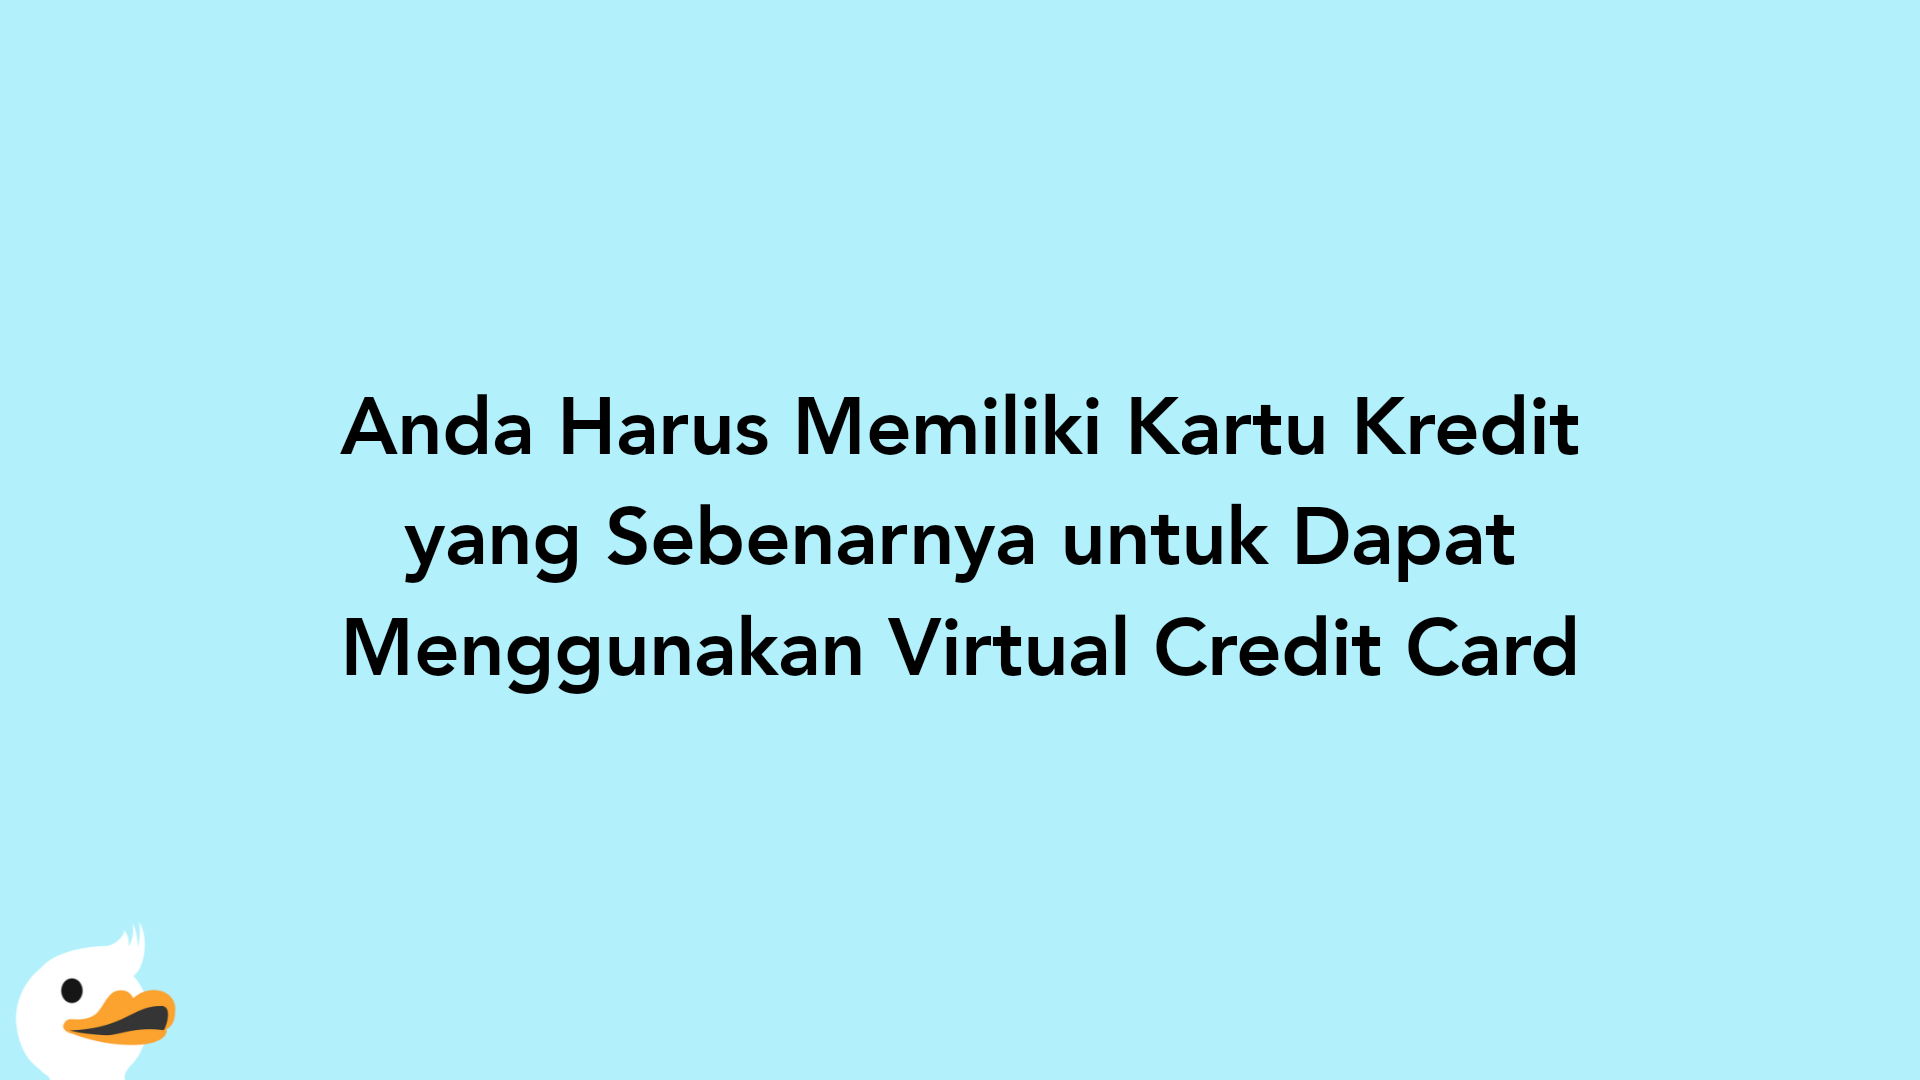 Anda Harus Memiliki Kartu Kredit yang Sebenarnya untuk Dapat Menggunakan Virtual Credit Card